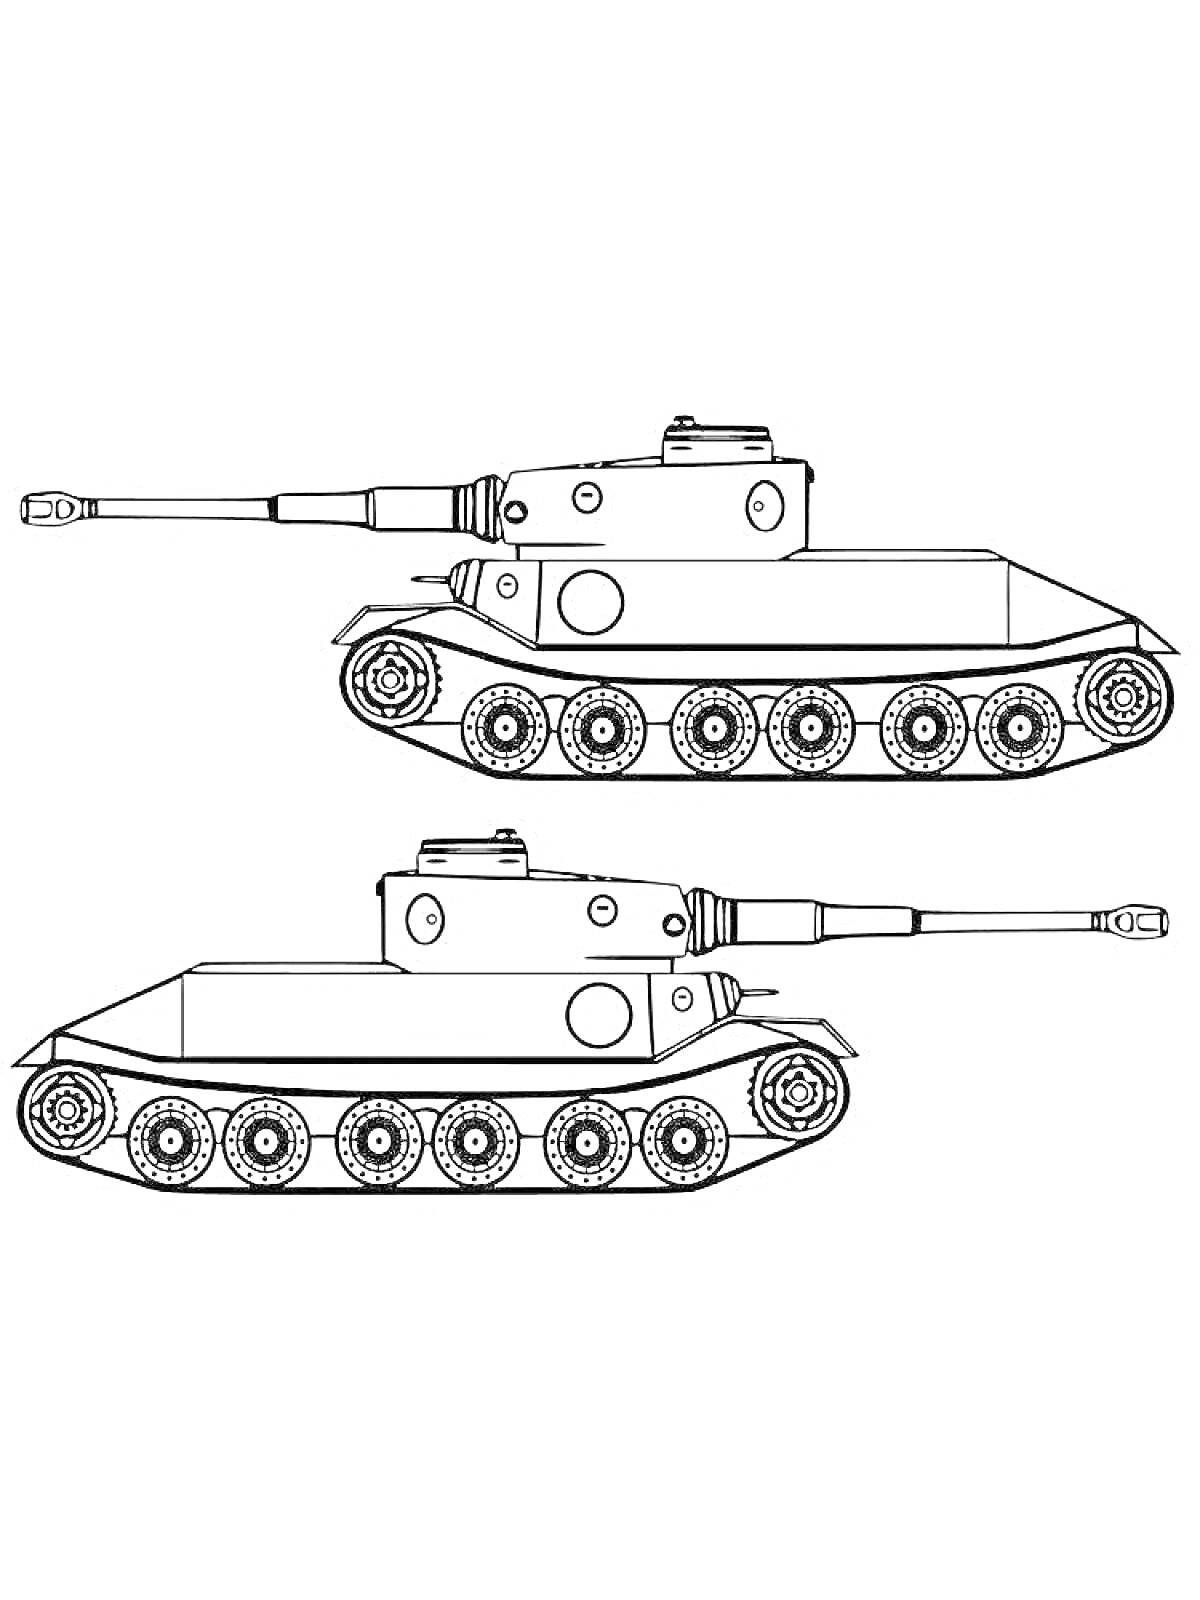 Раскраска Два танка Тигр в профиль с пушками и гусеницами, по одному танку в верхней и нижней части изображения